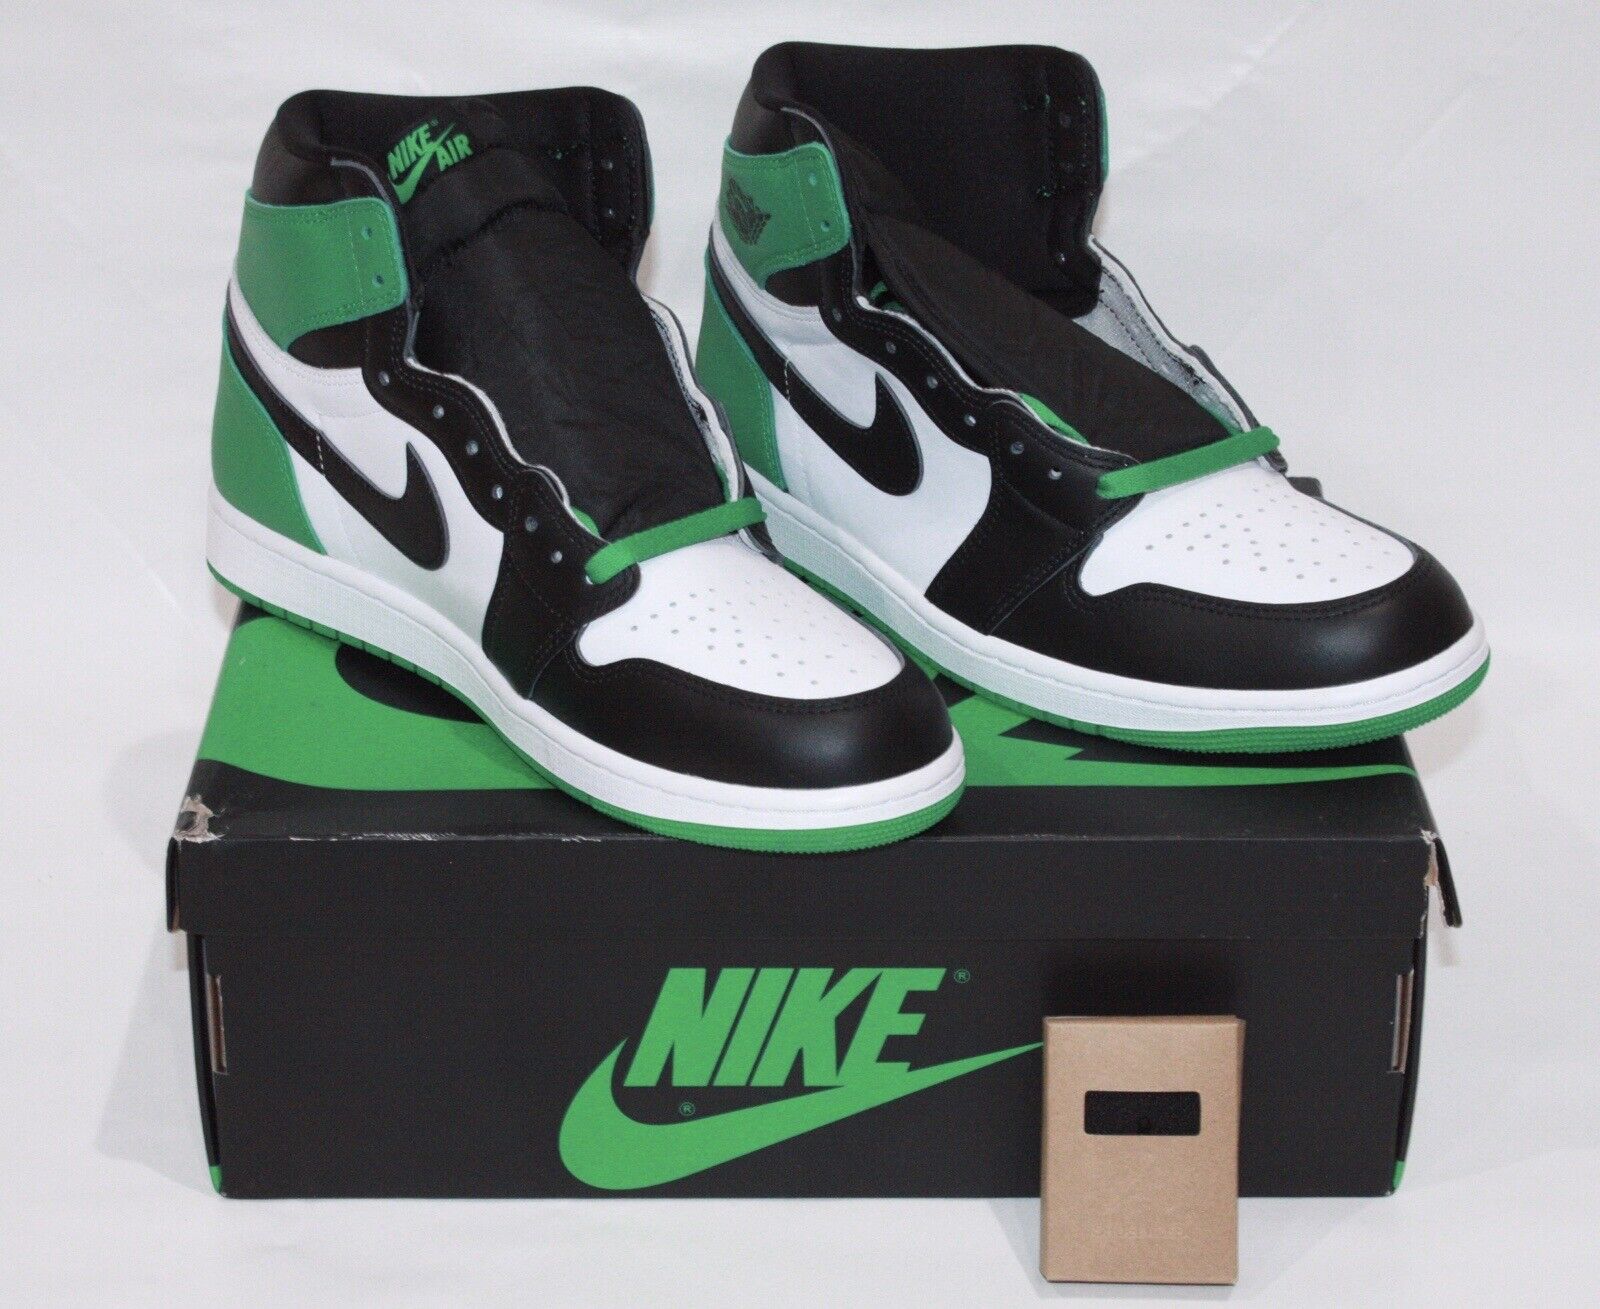 Nike Air Jordan 1 Retro High OG Size 11.5 Black Lucky Green White DZ5485-031 New